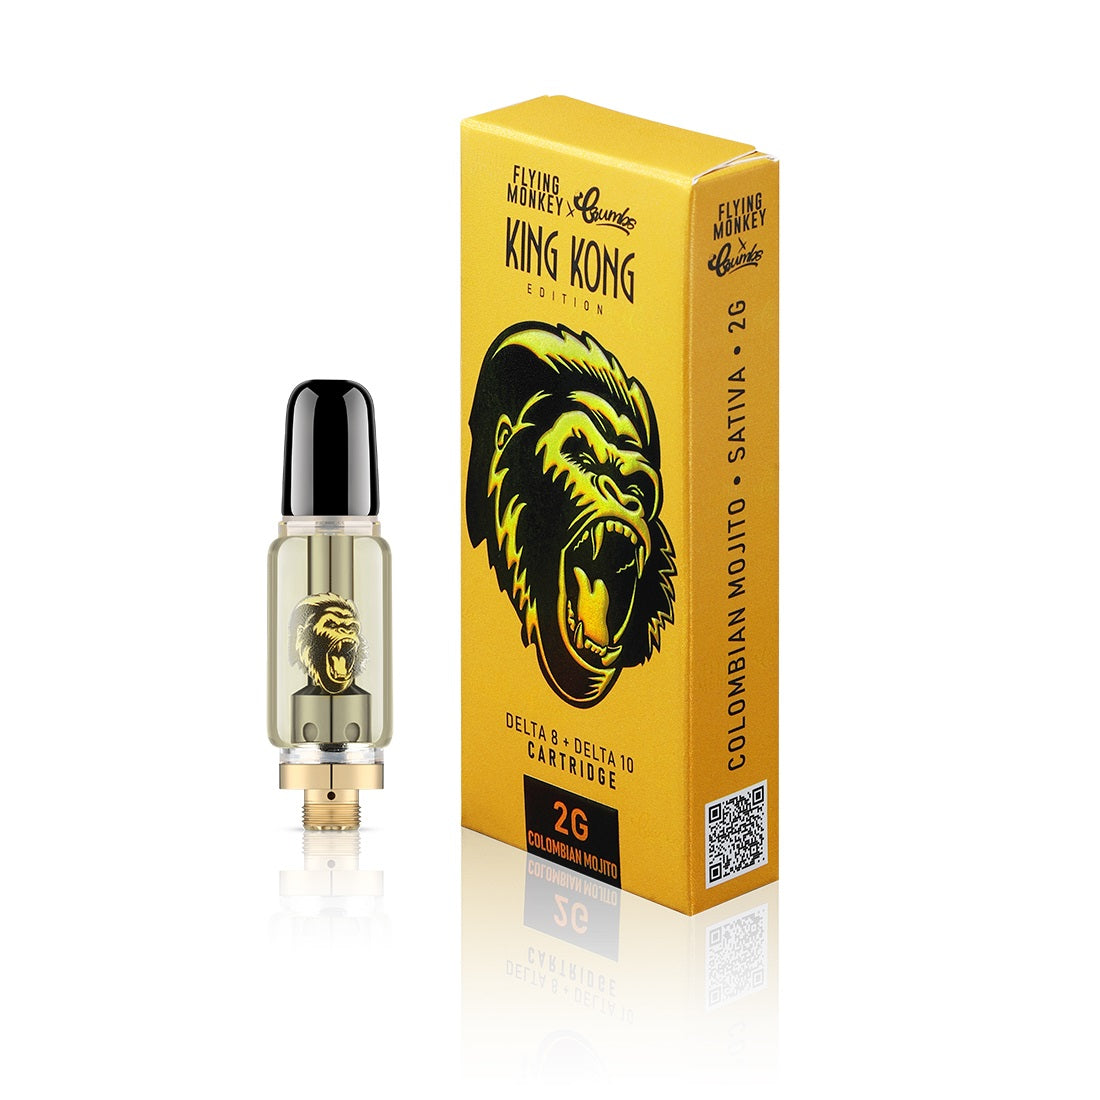 King Kong 2 Gram D8 + D10 Cartridge